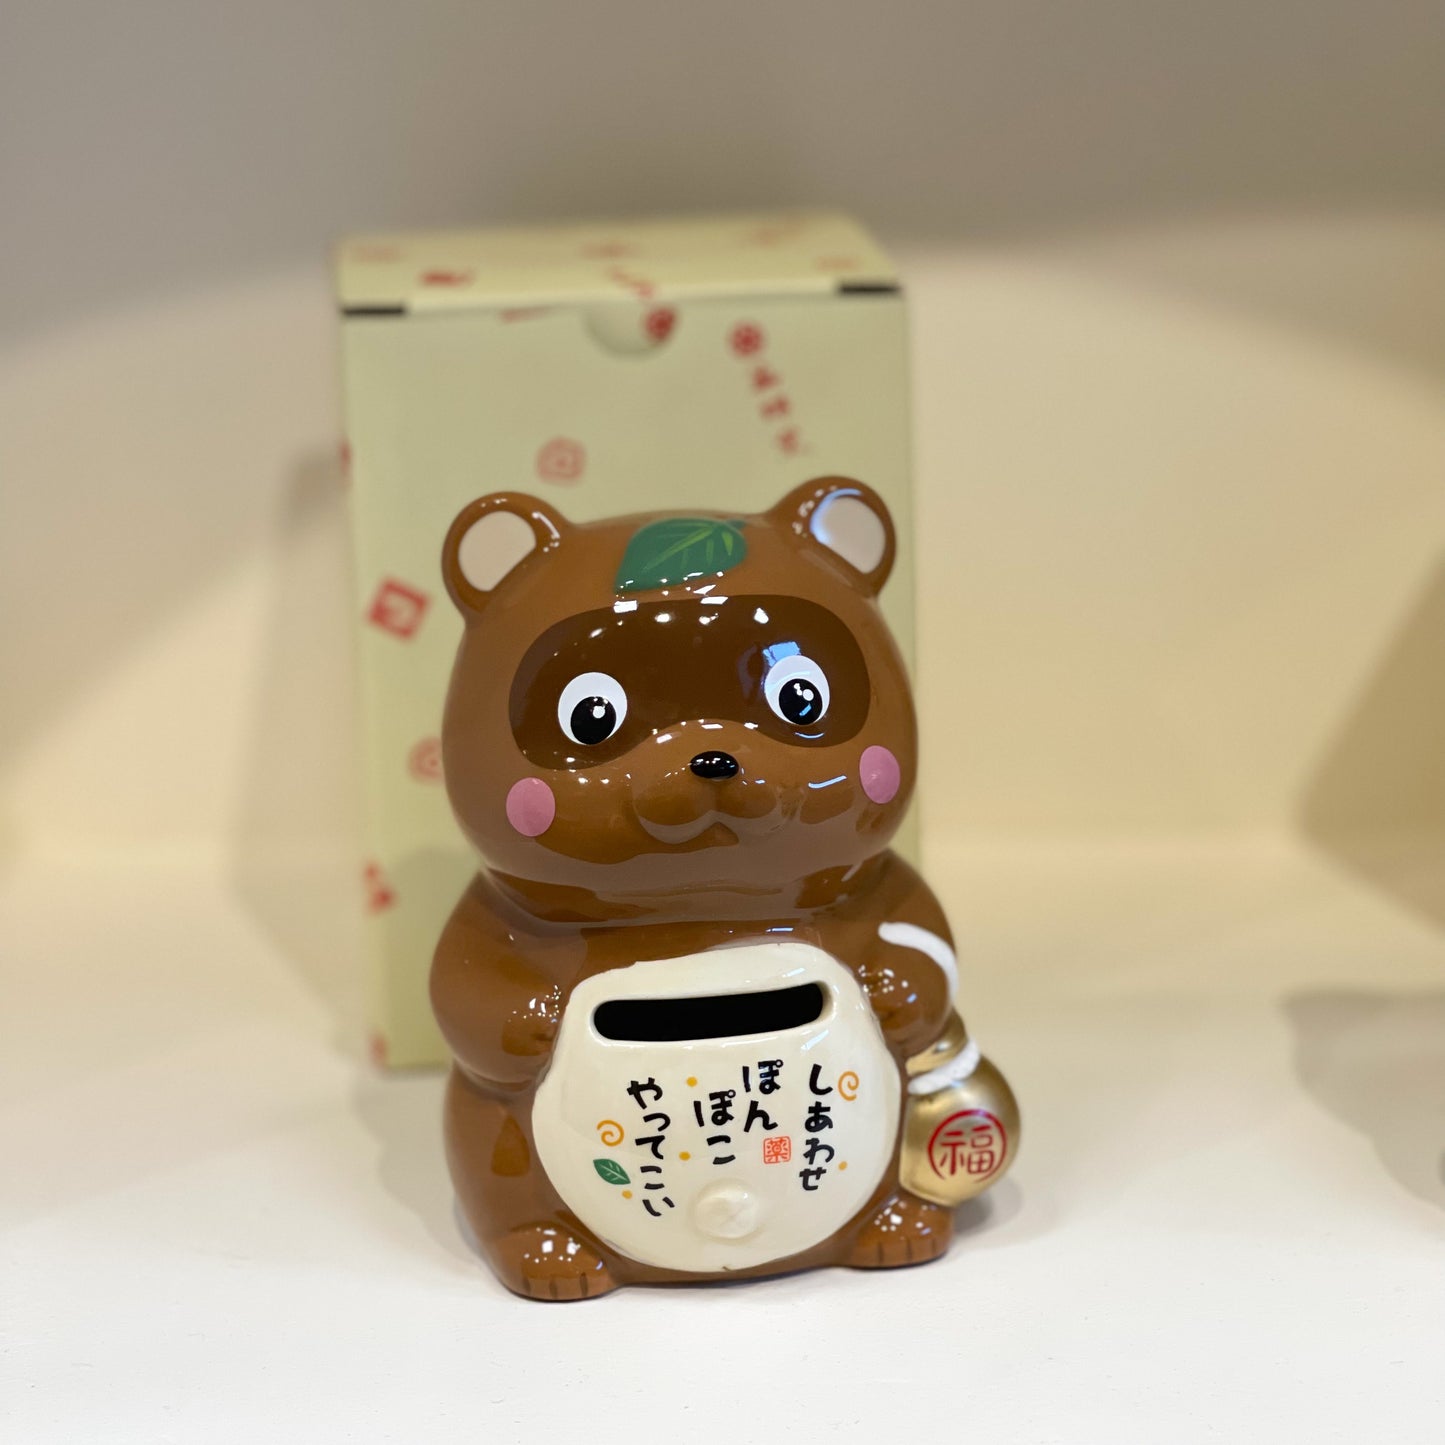 Japanese Handmade Lucky Ornament - Piggy Bank